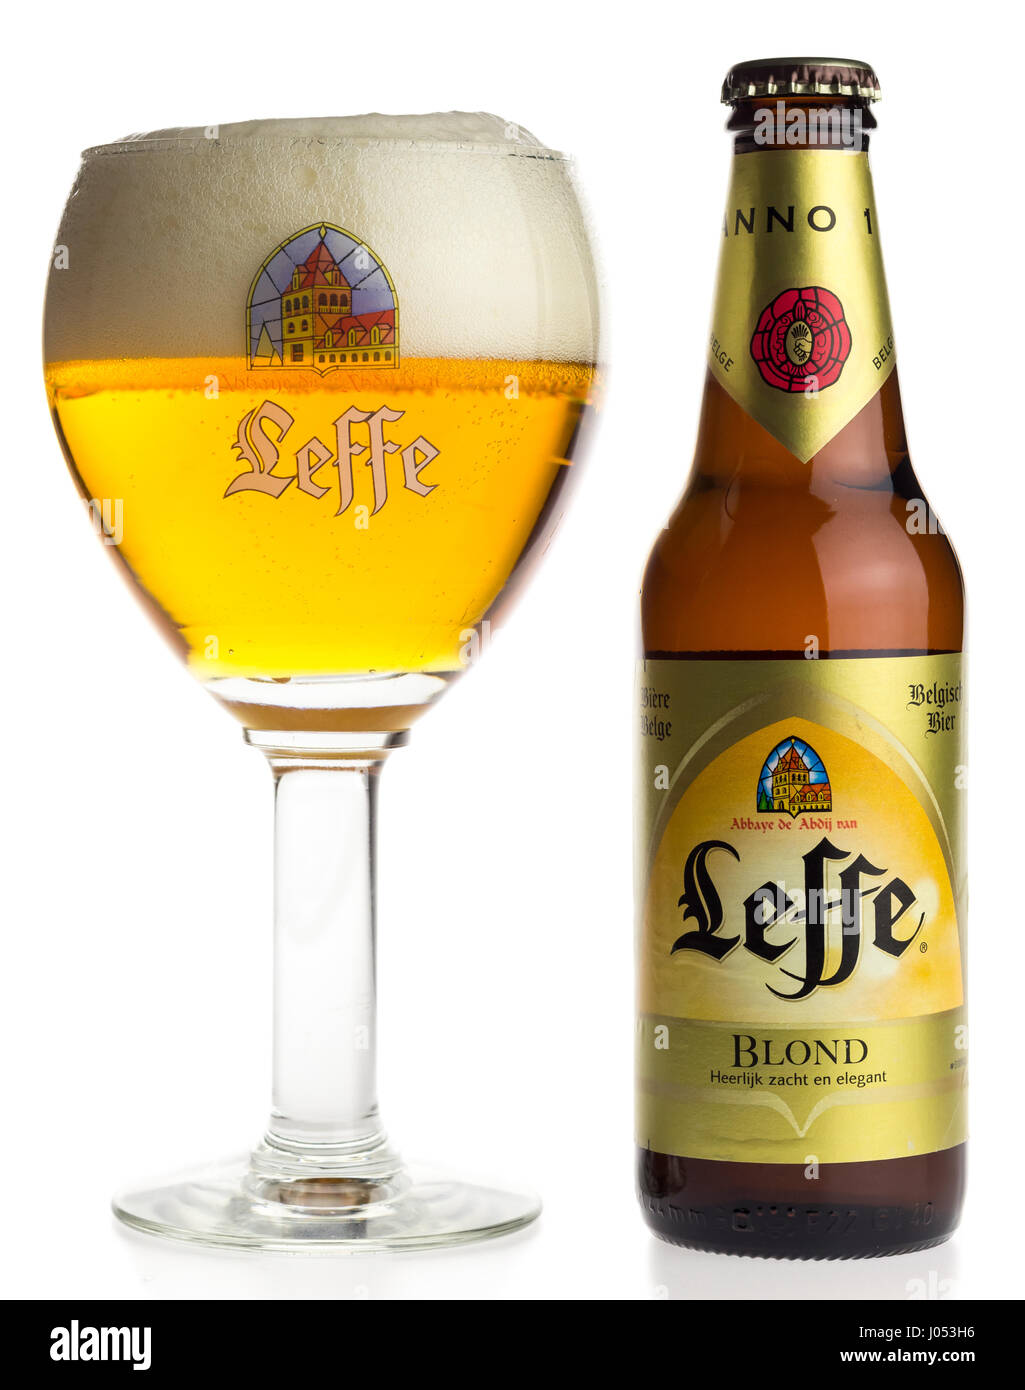 Flasche und Glas belgisches Leffe Blond Bier isoliert auf weißem  Hintergrund Stockfotografie - Alamy